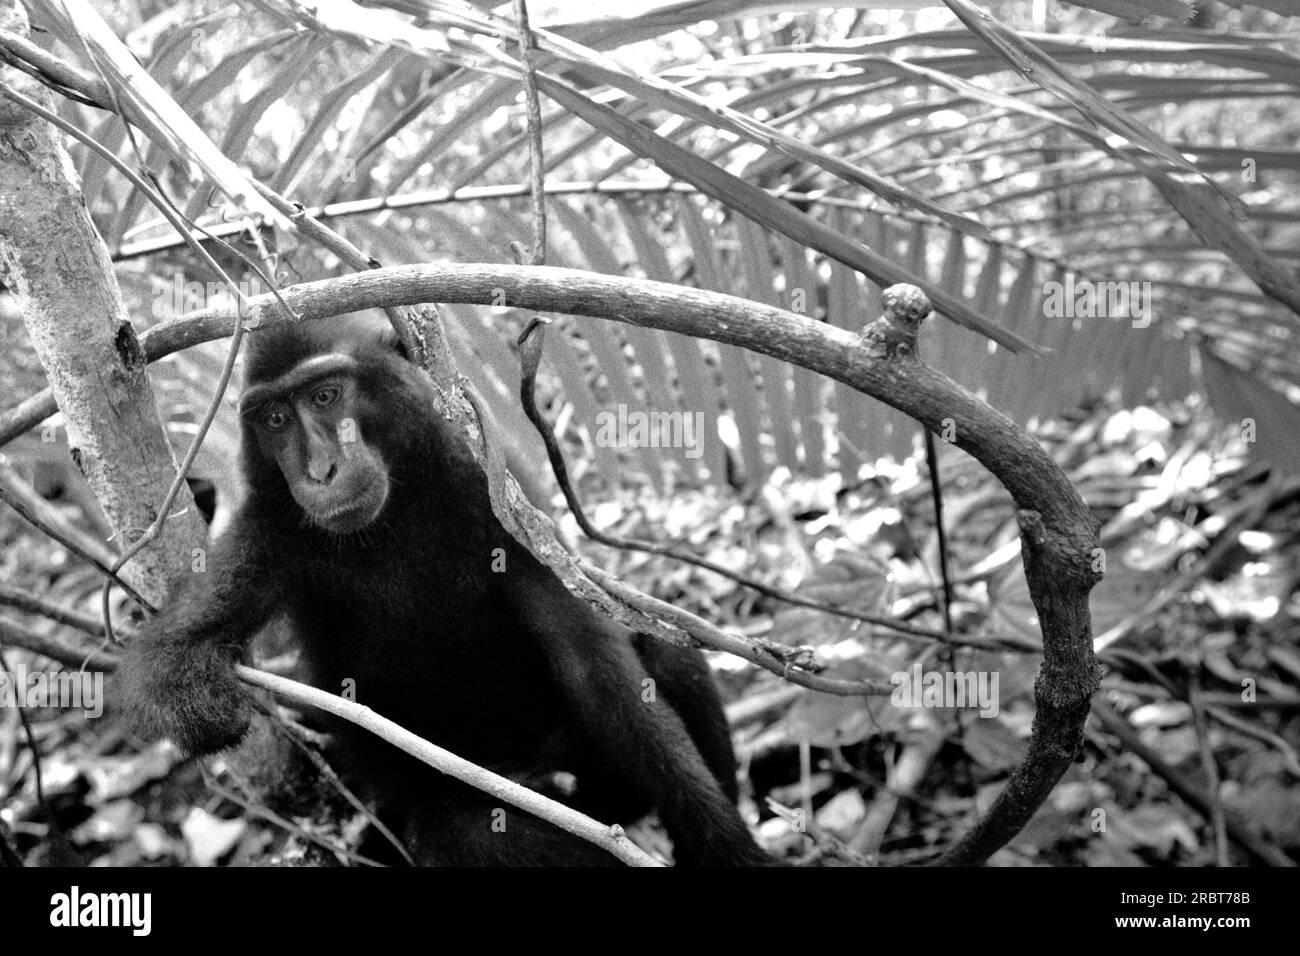 Ritratto di un macaco a cresta nera di Sulawesi (Macaca nigra) che ha perso la mano destra per mano di un bracconiere nella riserva naturale di Tangkoko, Sulawesi settentrionale, Indonesia. Macaca Nigra Project, un'organizzazione che si concentra sulla ricerca e la conservazione del macaco crestato, prevede che questo primato endemico si estinguerà nel 2050. La specie sta affrontando il bracconaggio (1.700 trappole sono state raccolte in 16 anni, hanno riferito), la perdita di habitat e altri tipi di minacce causate dalle attività umane. Foto Stock